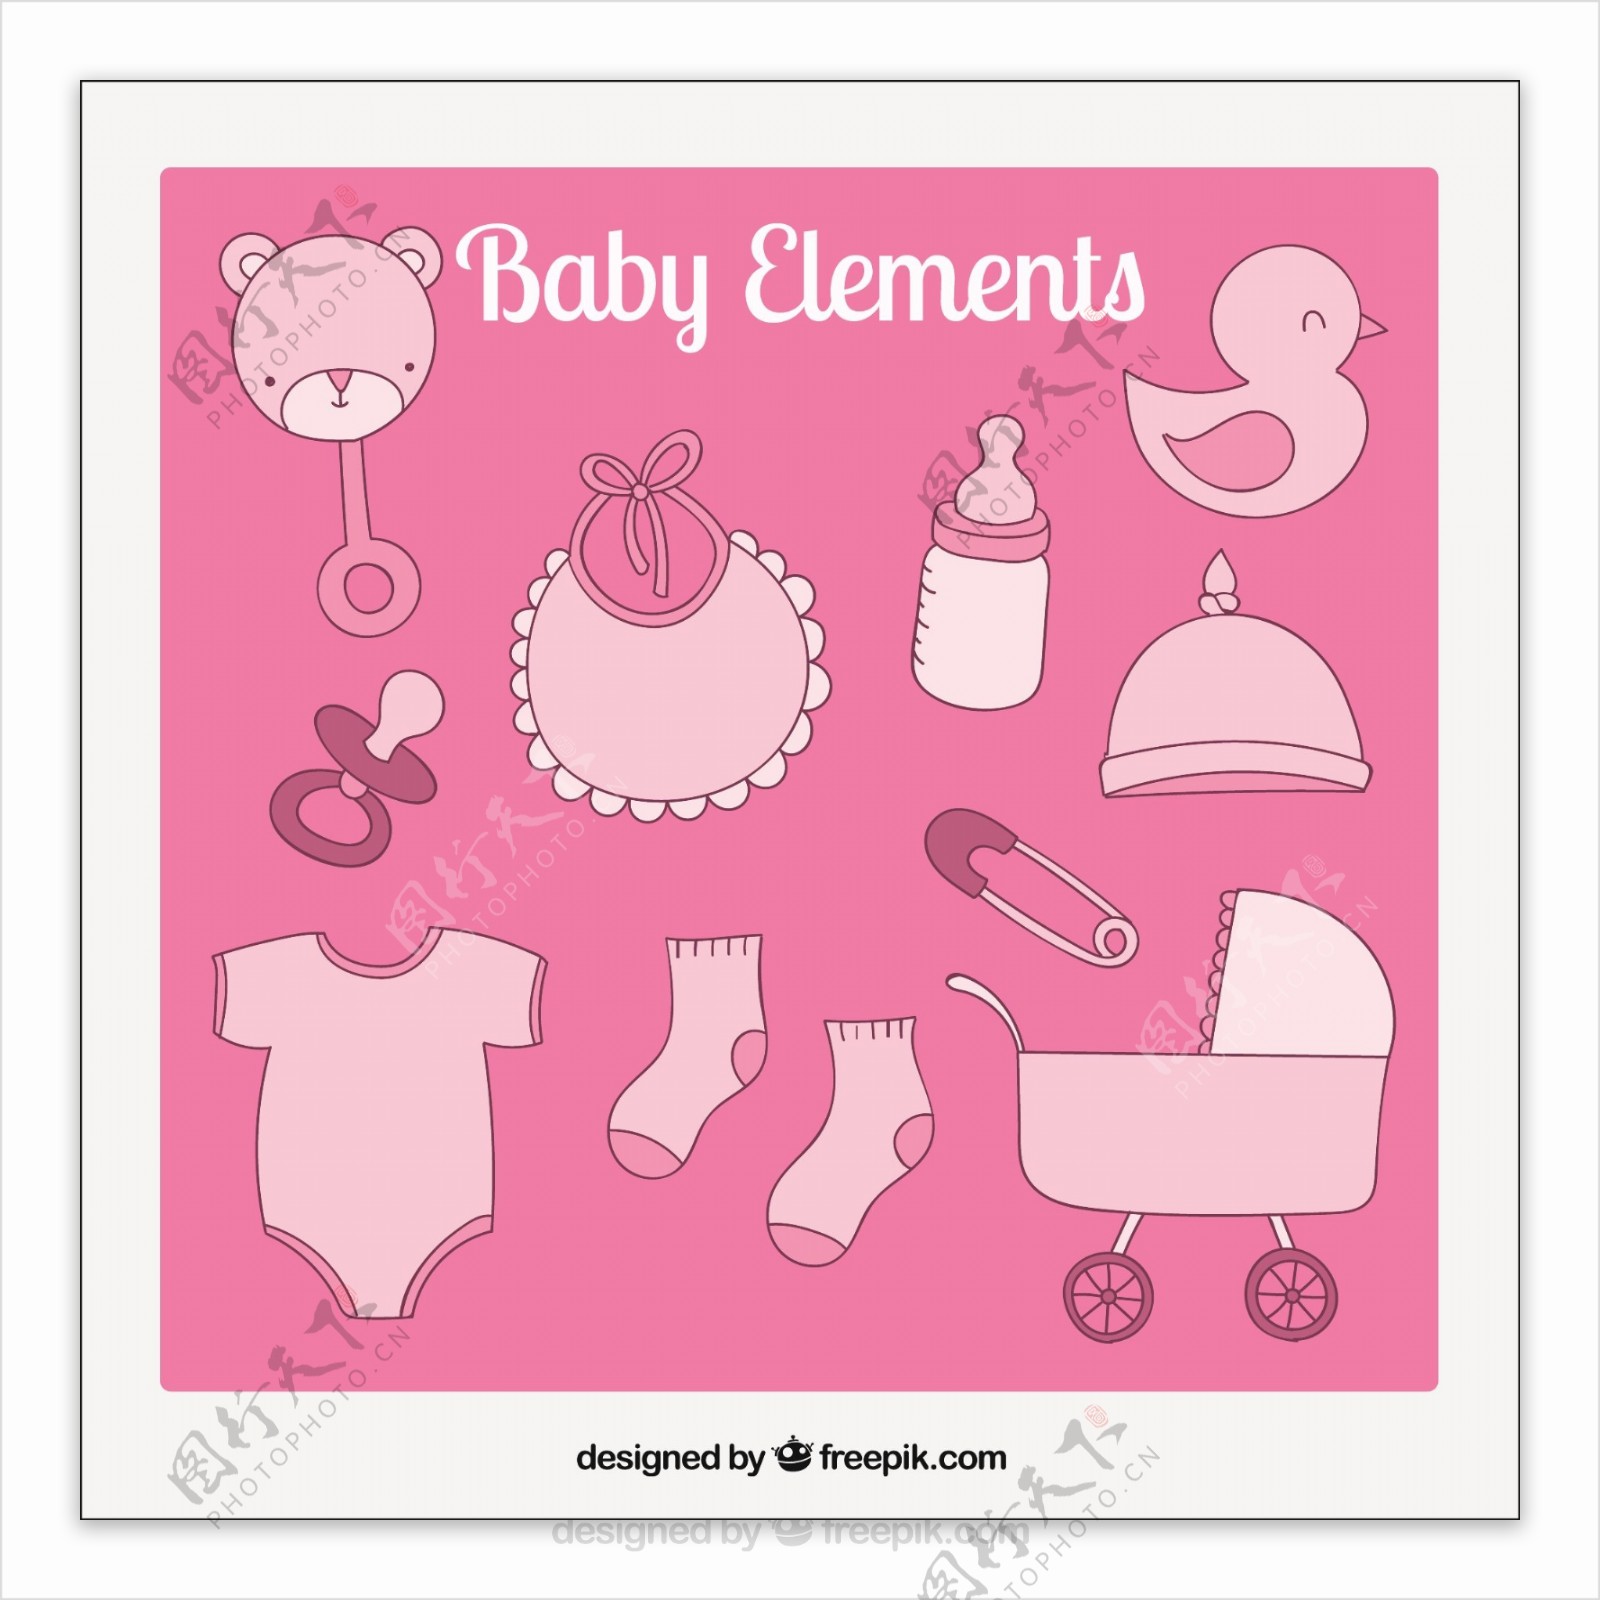 粉红色调的婴儿元素